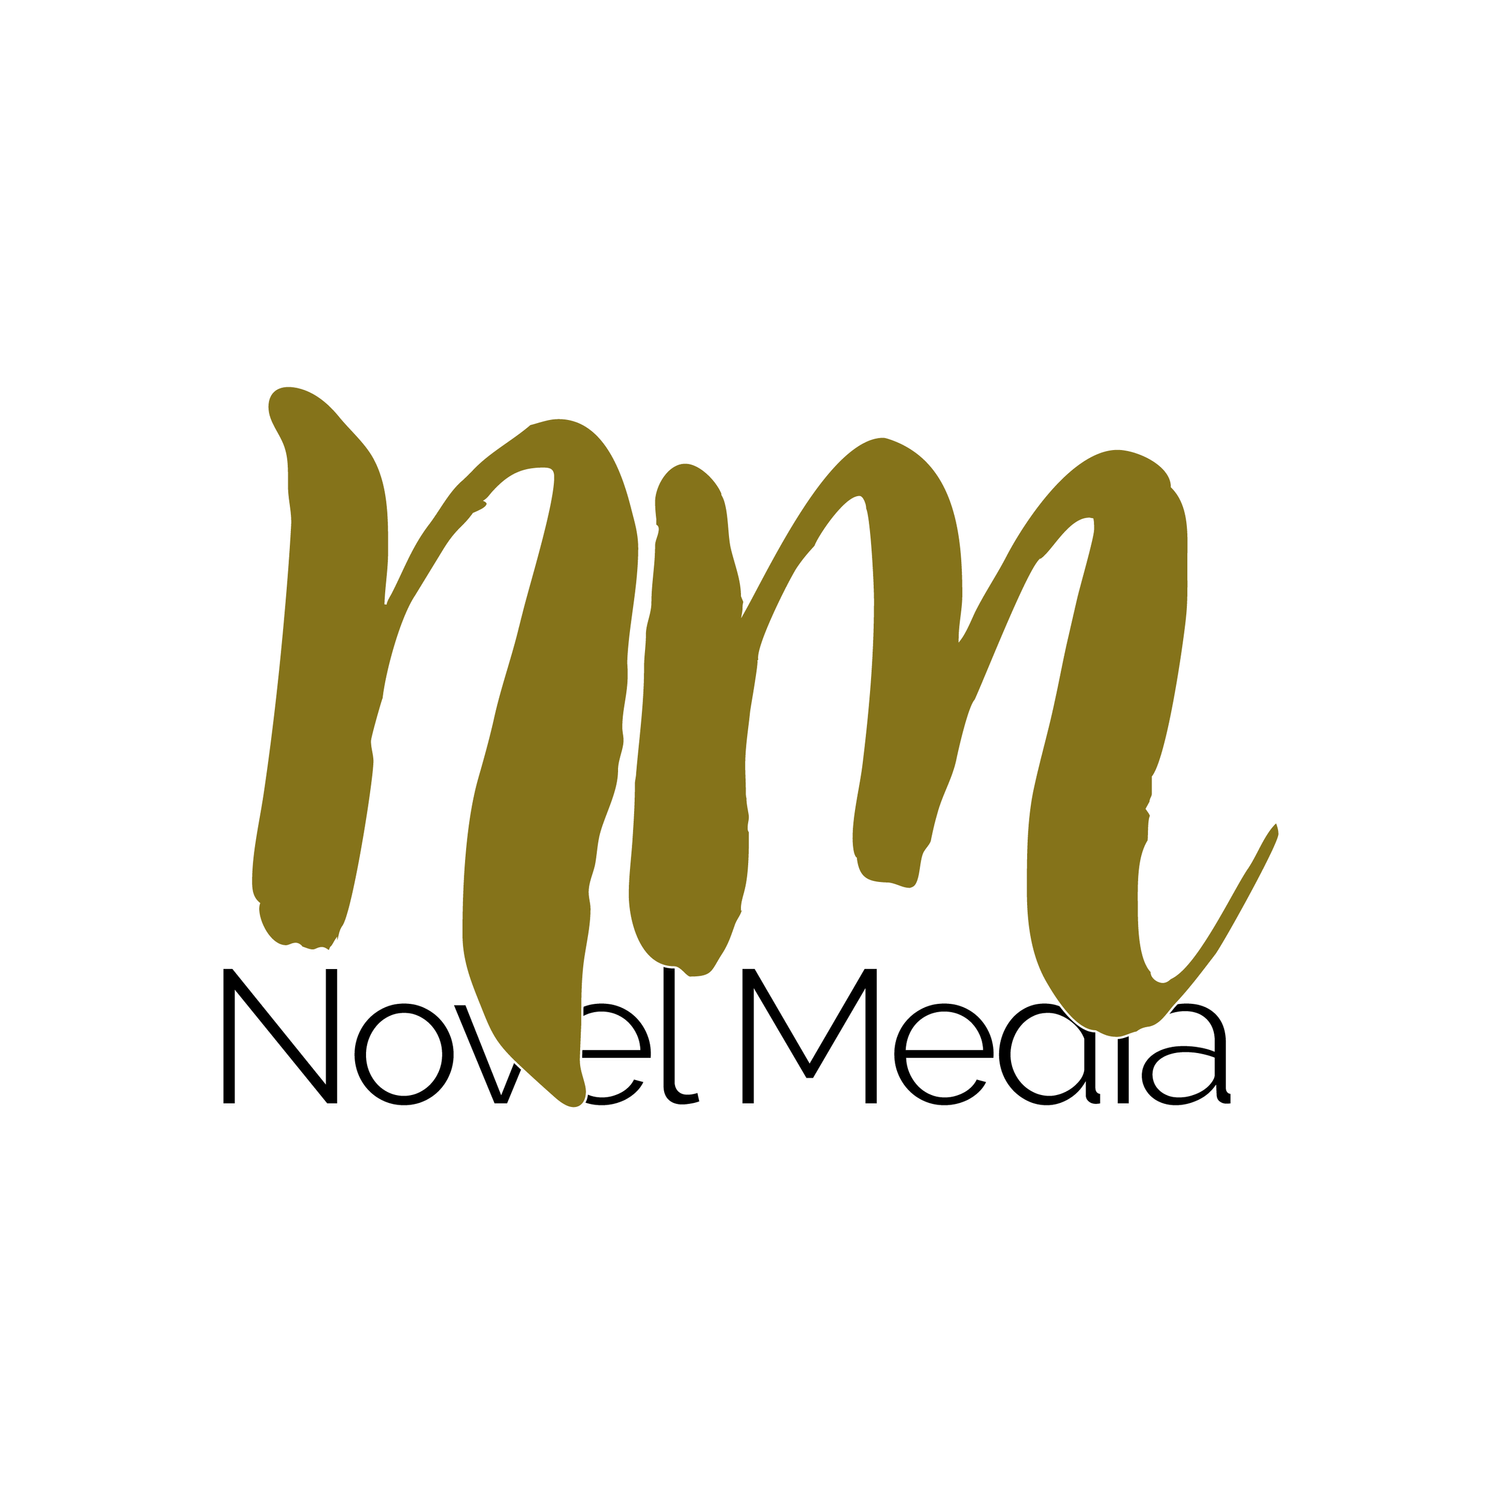 Novel Media